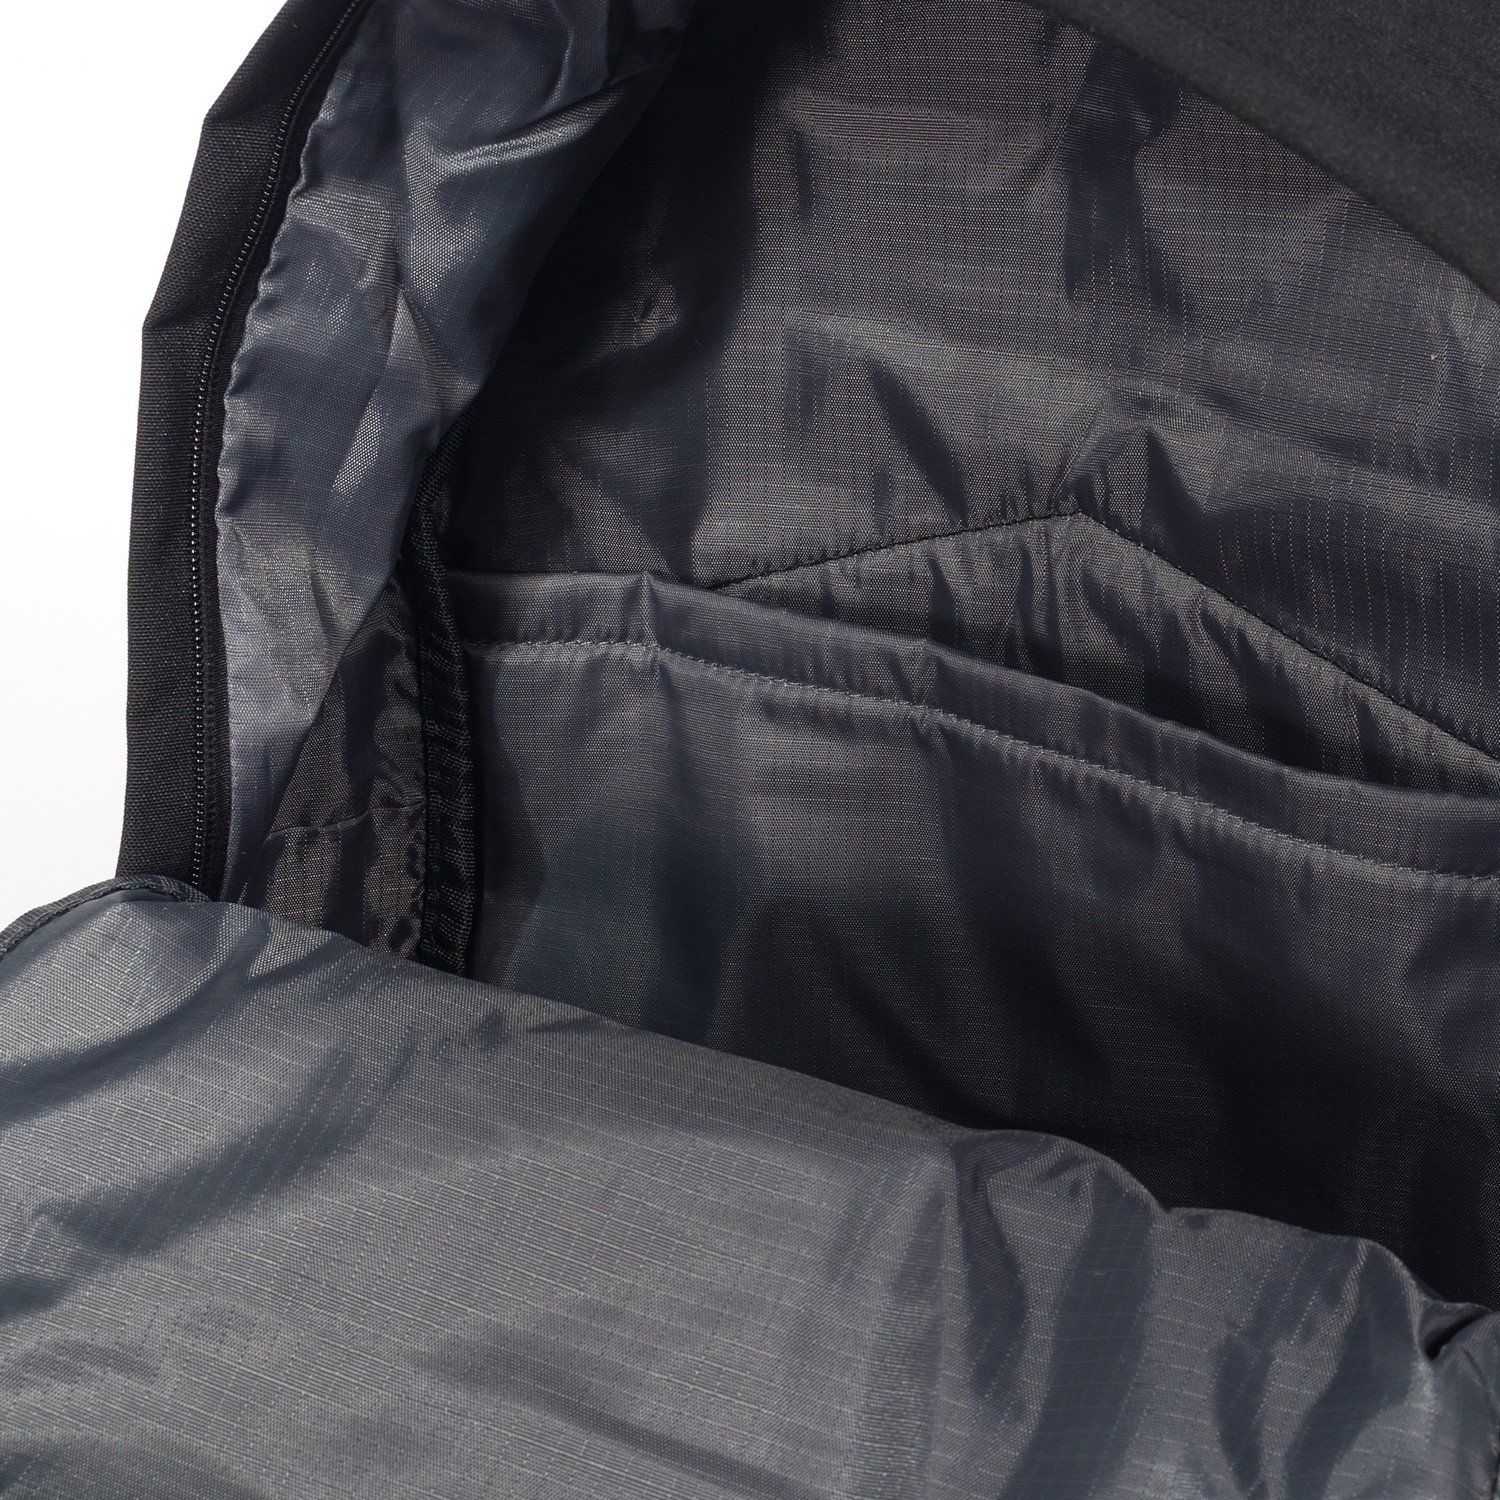 Рюкзак мужской городской, черный однотонный, с USB и чехлом от дождя, объем 28 л